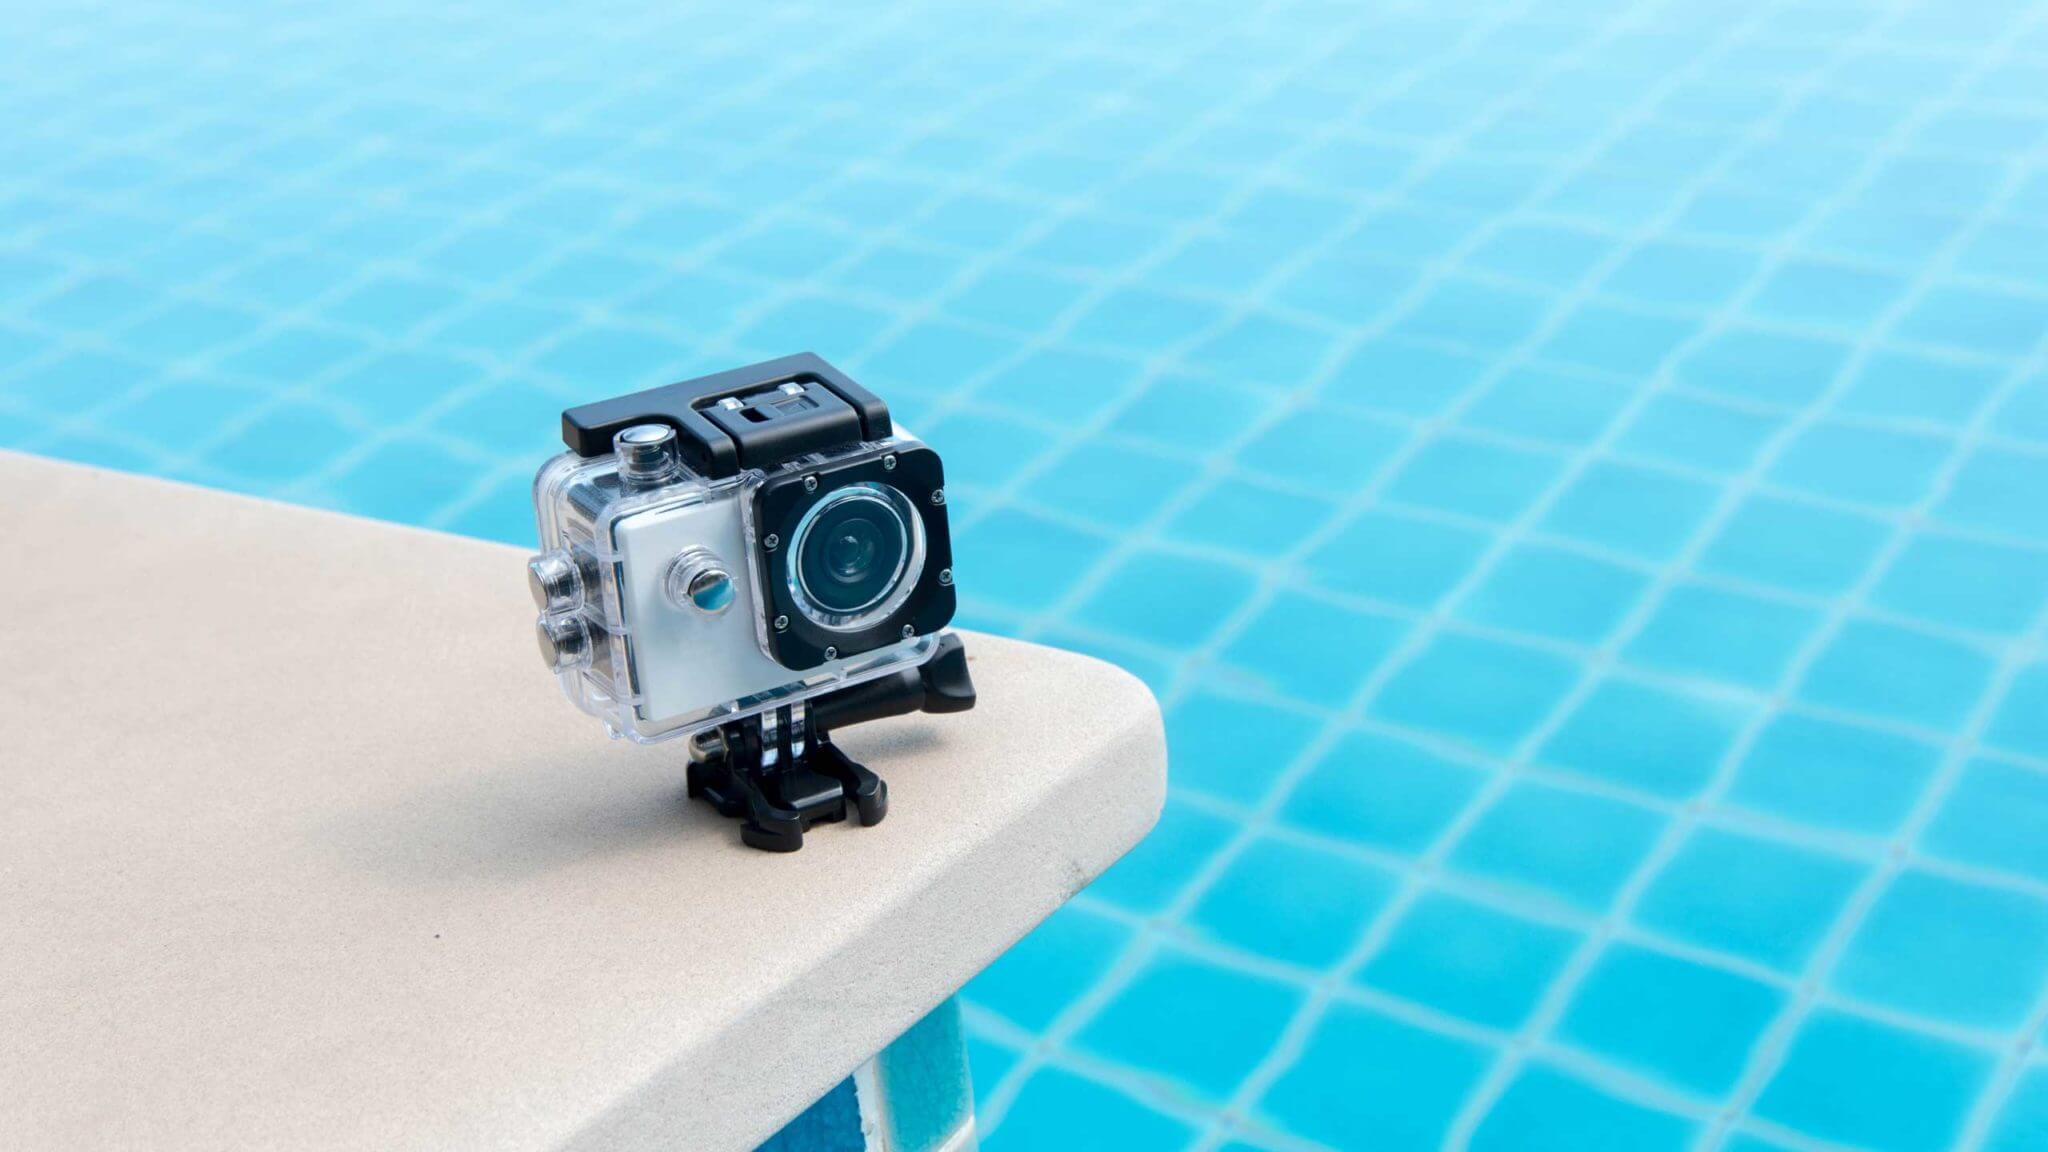 Waterproof Gopro camera by poolside